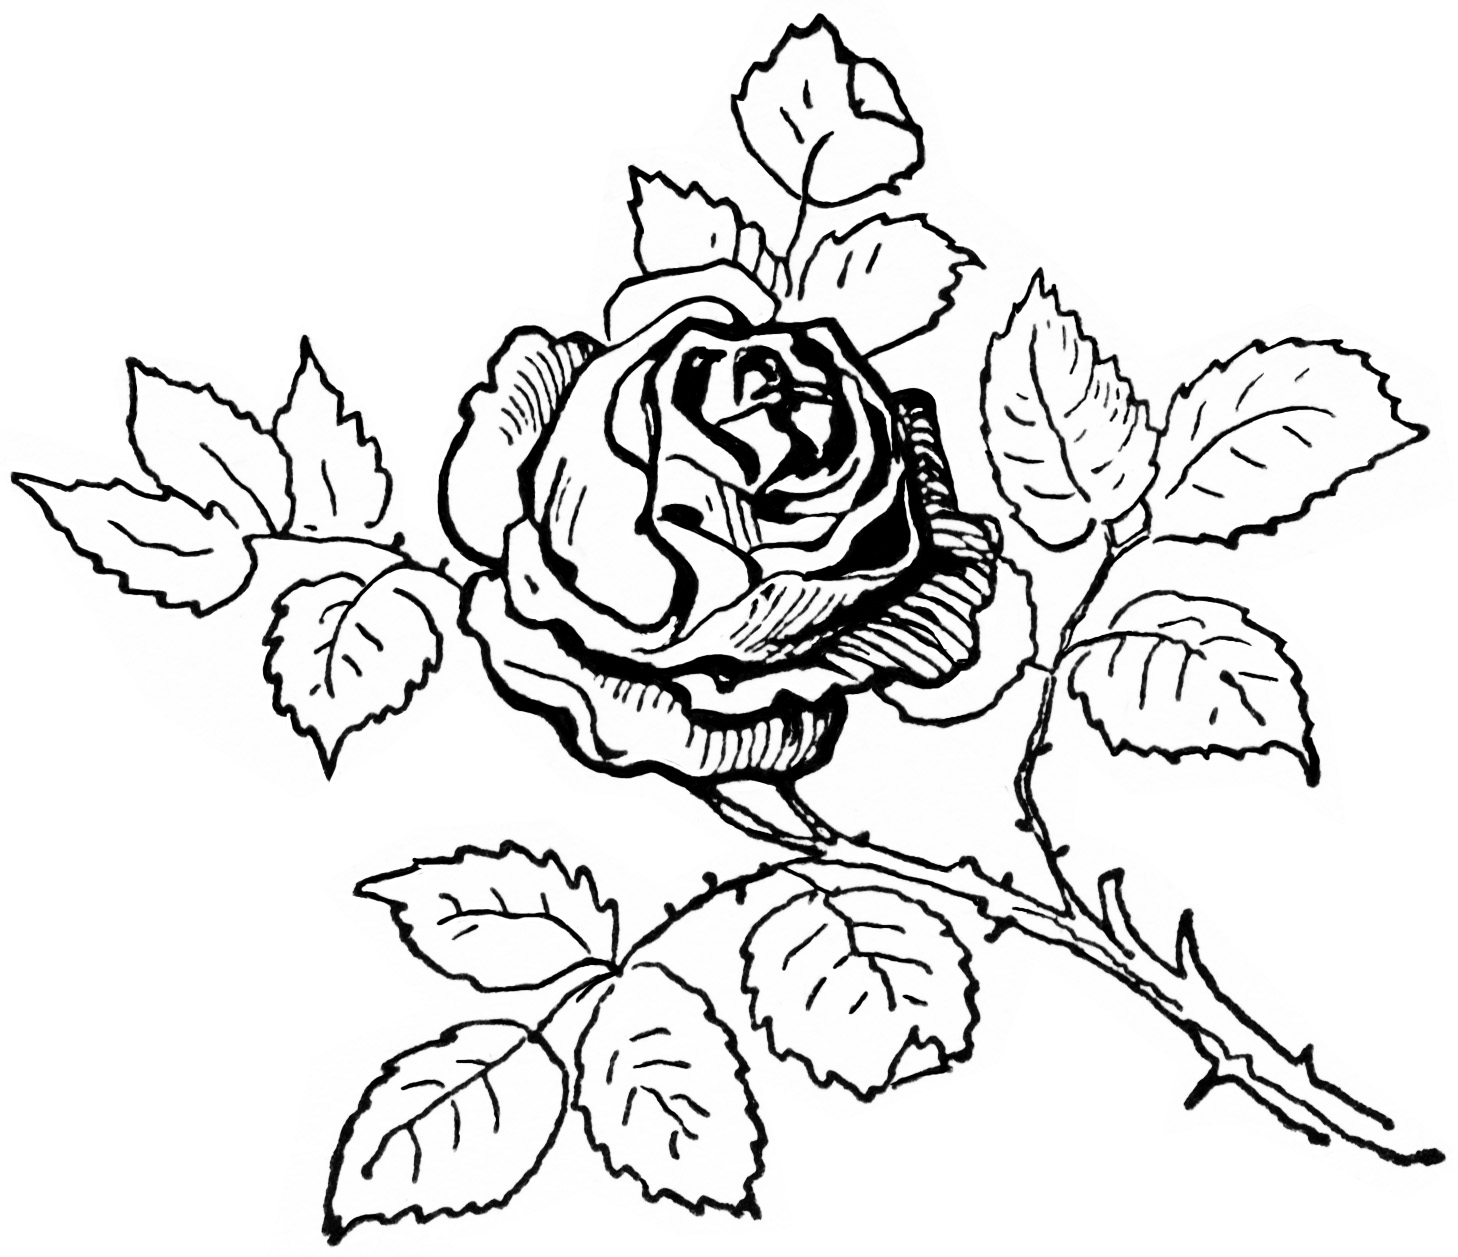 Rose Black And White Outline 